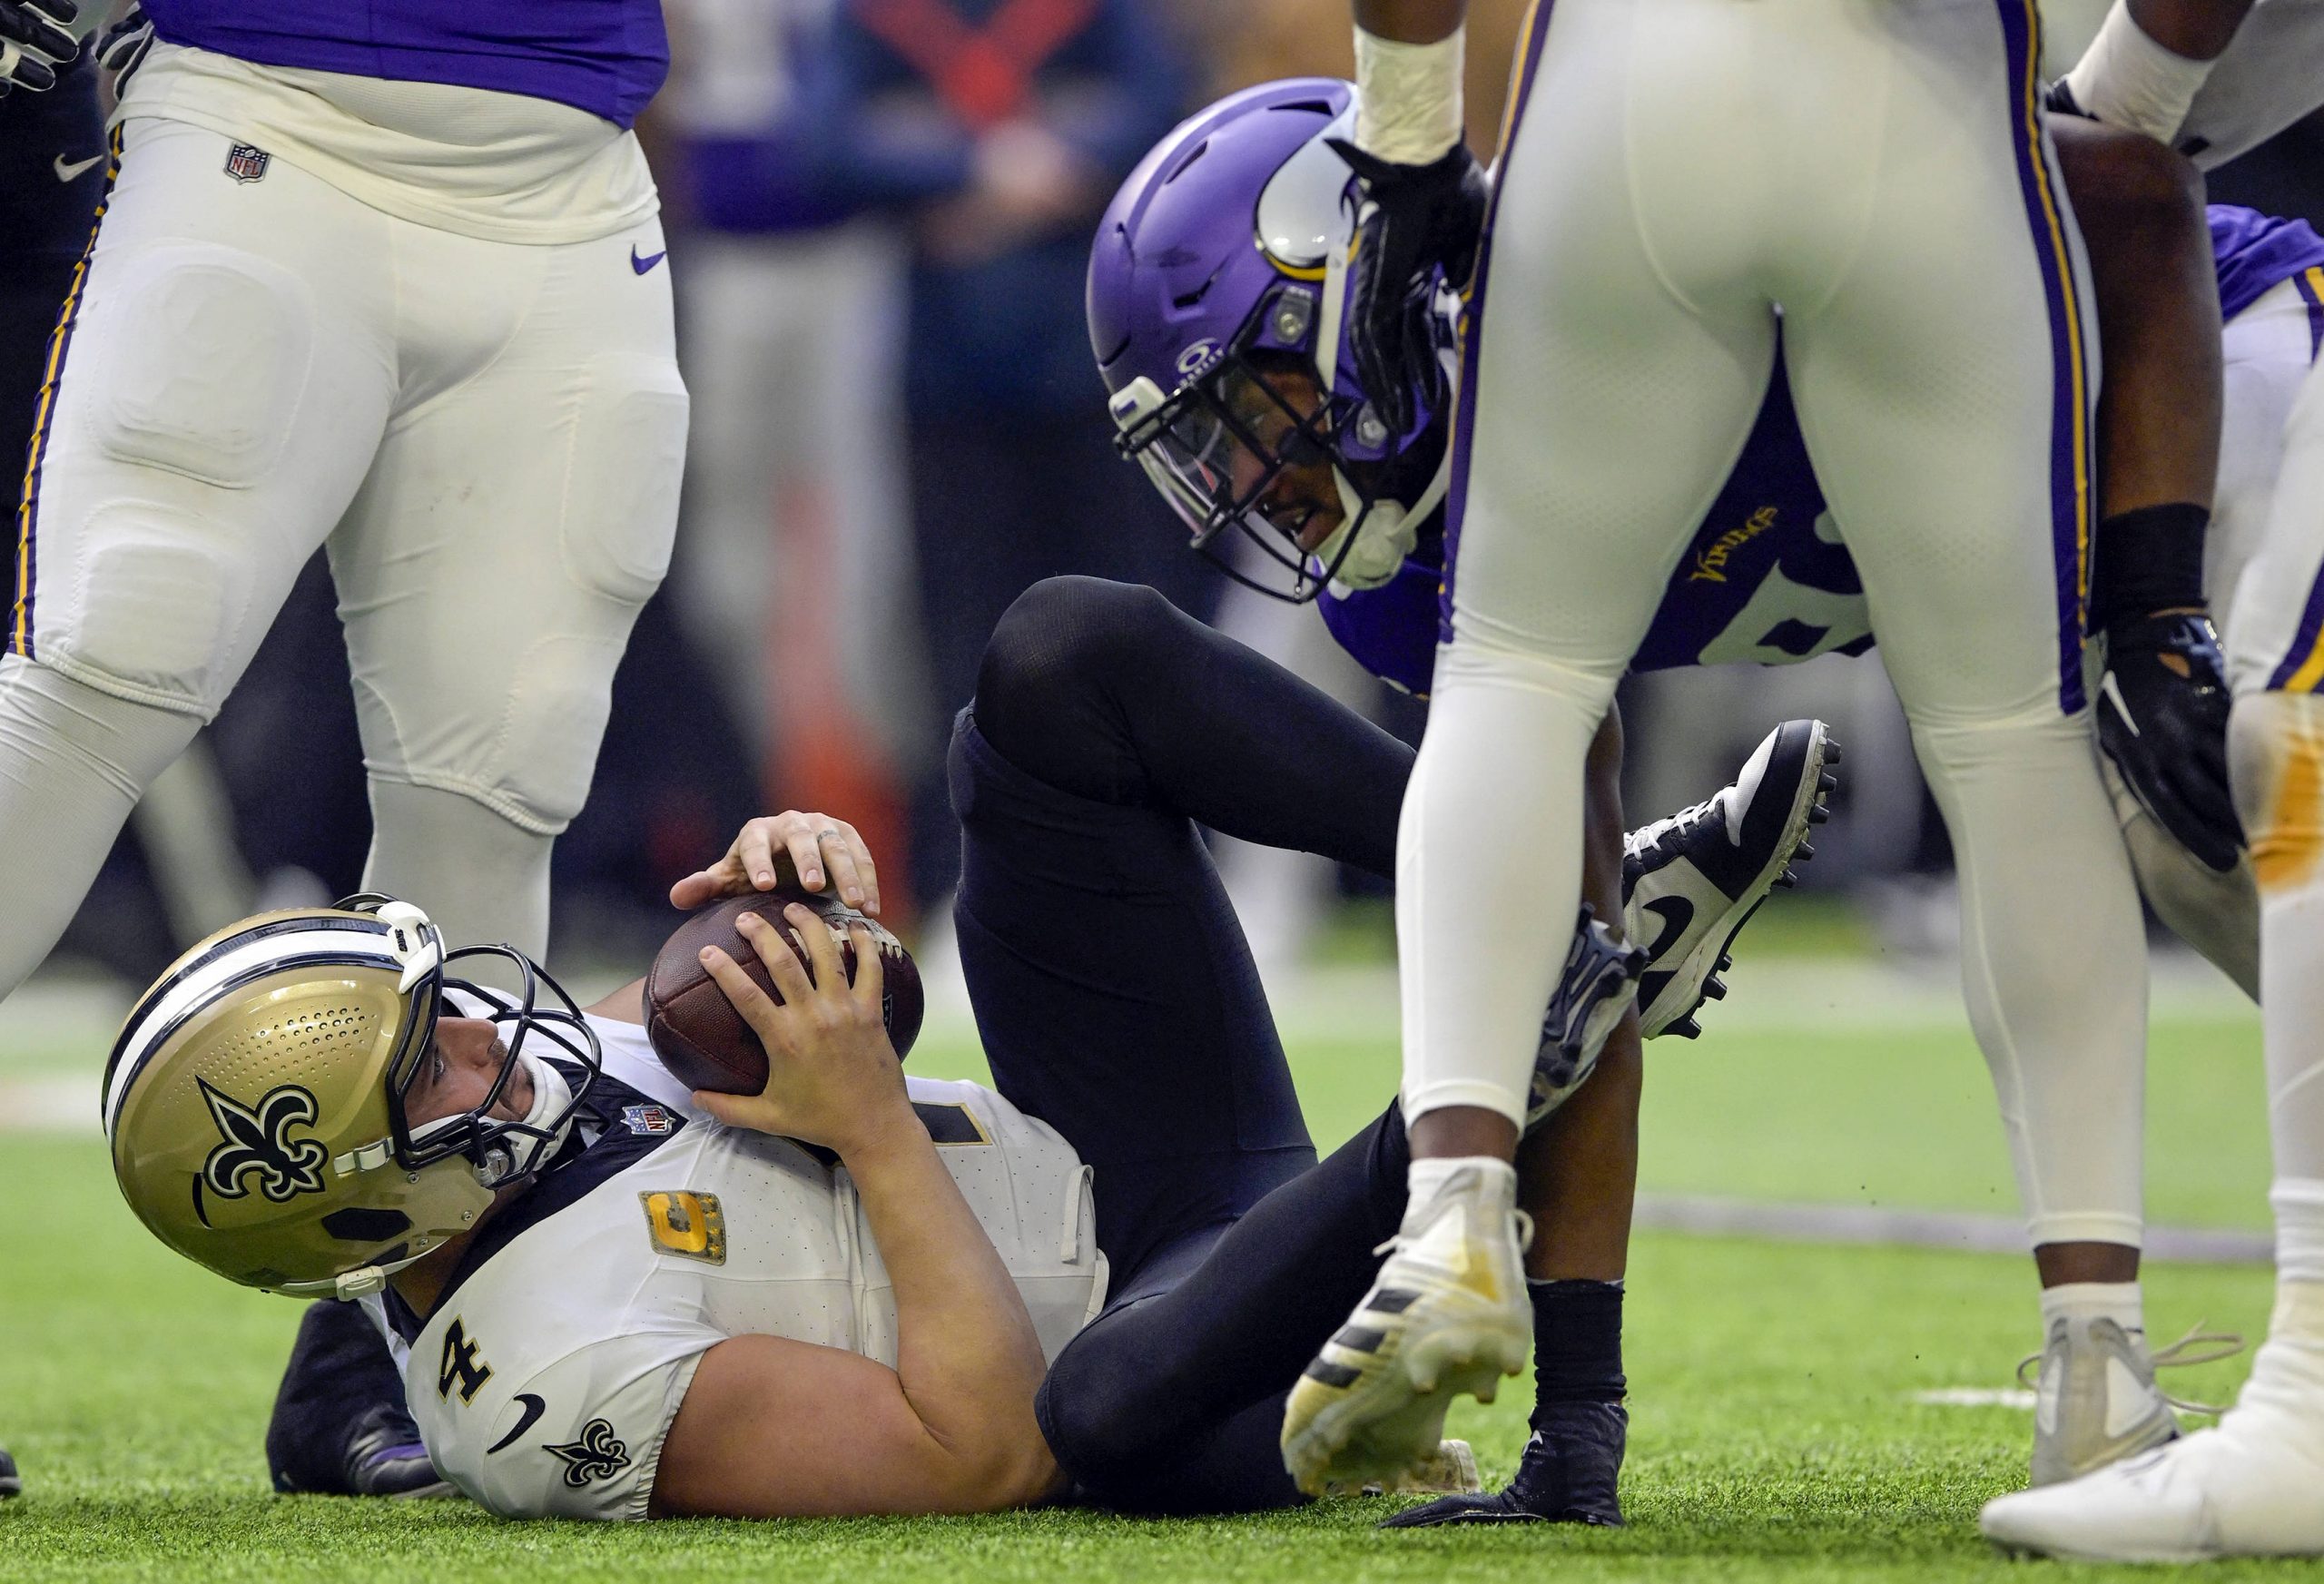 FootballR - NFL - Der Quarterback der New Orleans Saints Derek Carr liegt auf dem Boden.